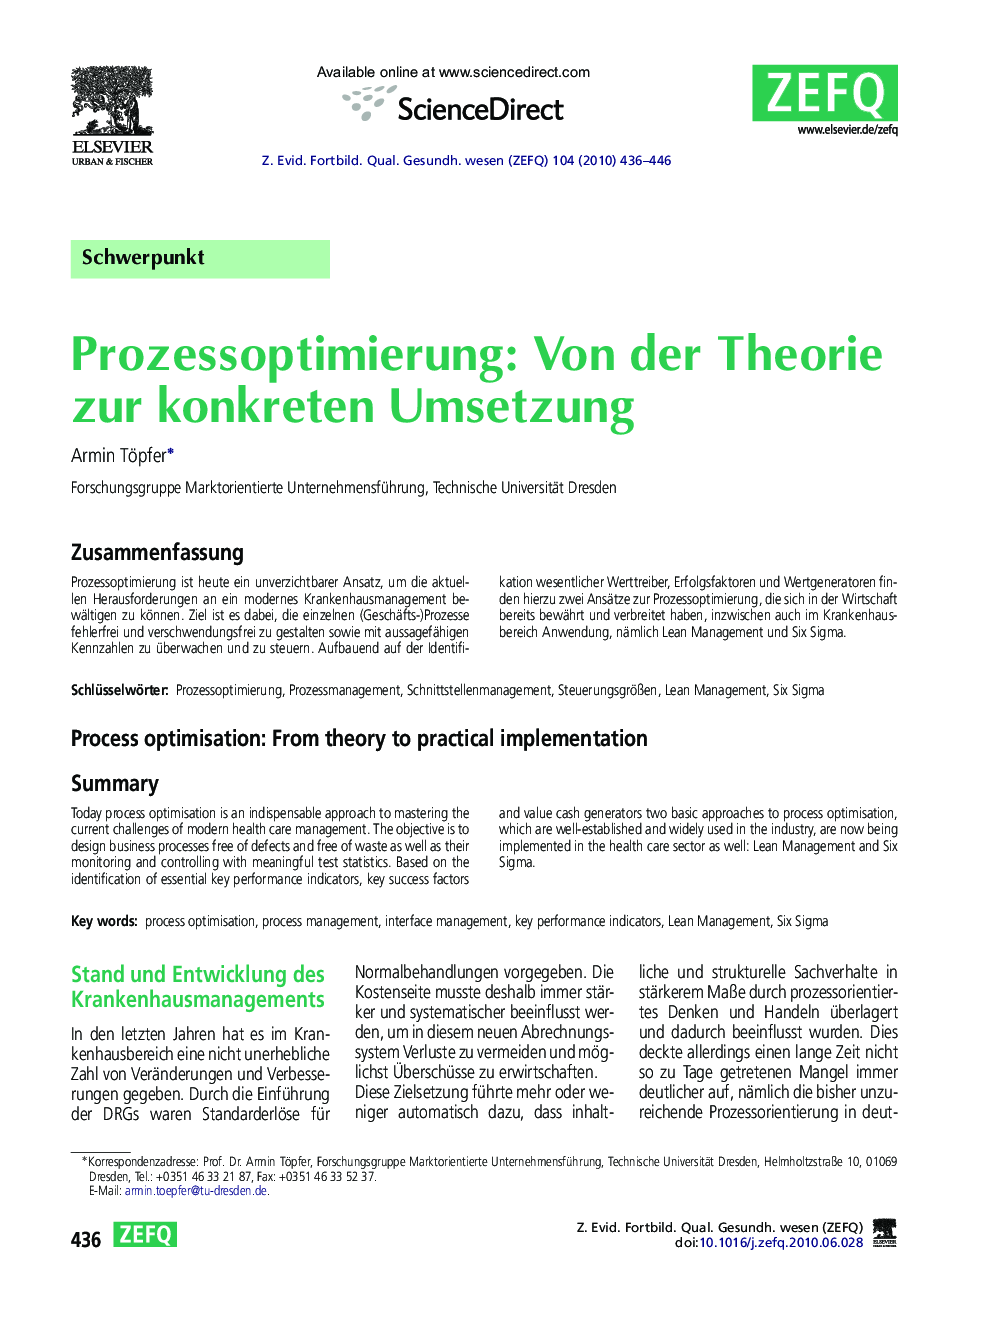 Prozessoptimierung: Von der Theorie zur konkreten Umsetzung